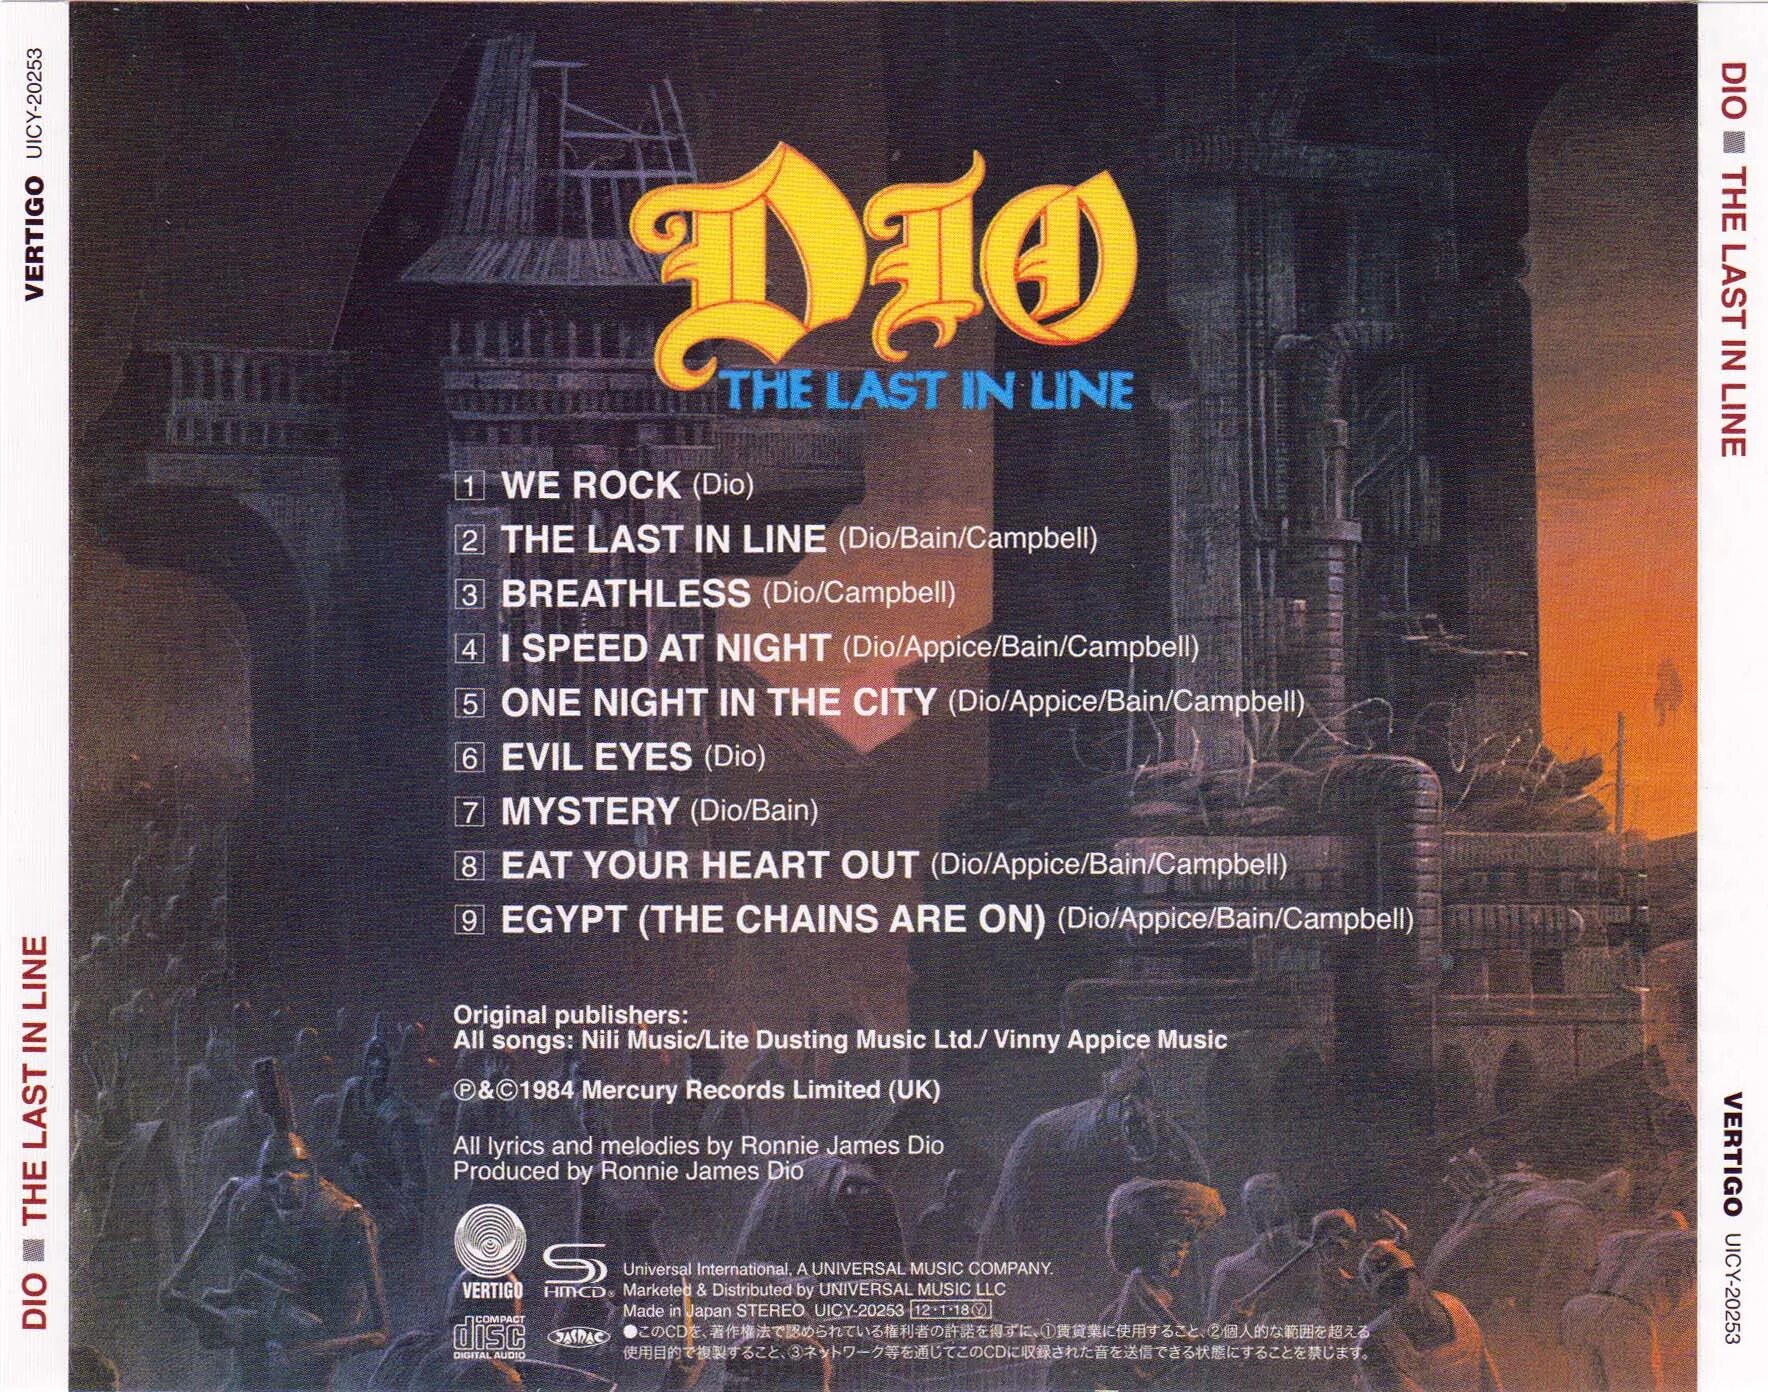 Dio night. Dio the last in line 1984. Dio the last in line 1984 обложка. Dio 1984 the last in line обложка альбома. Dio the last in line обложка альбома.